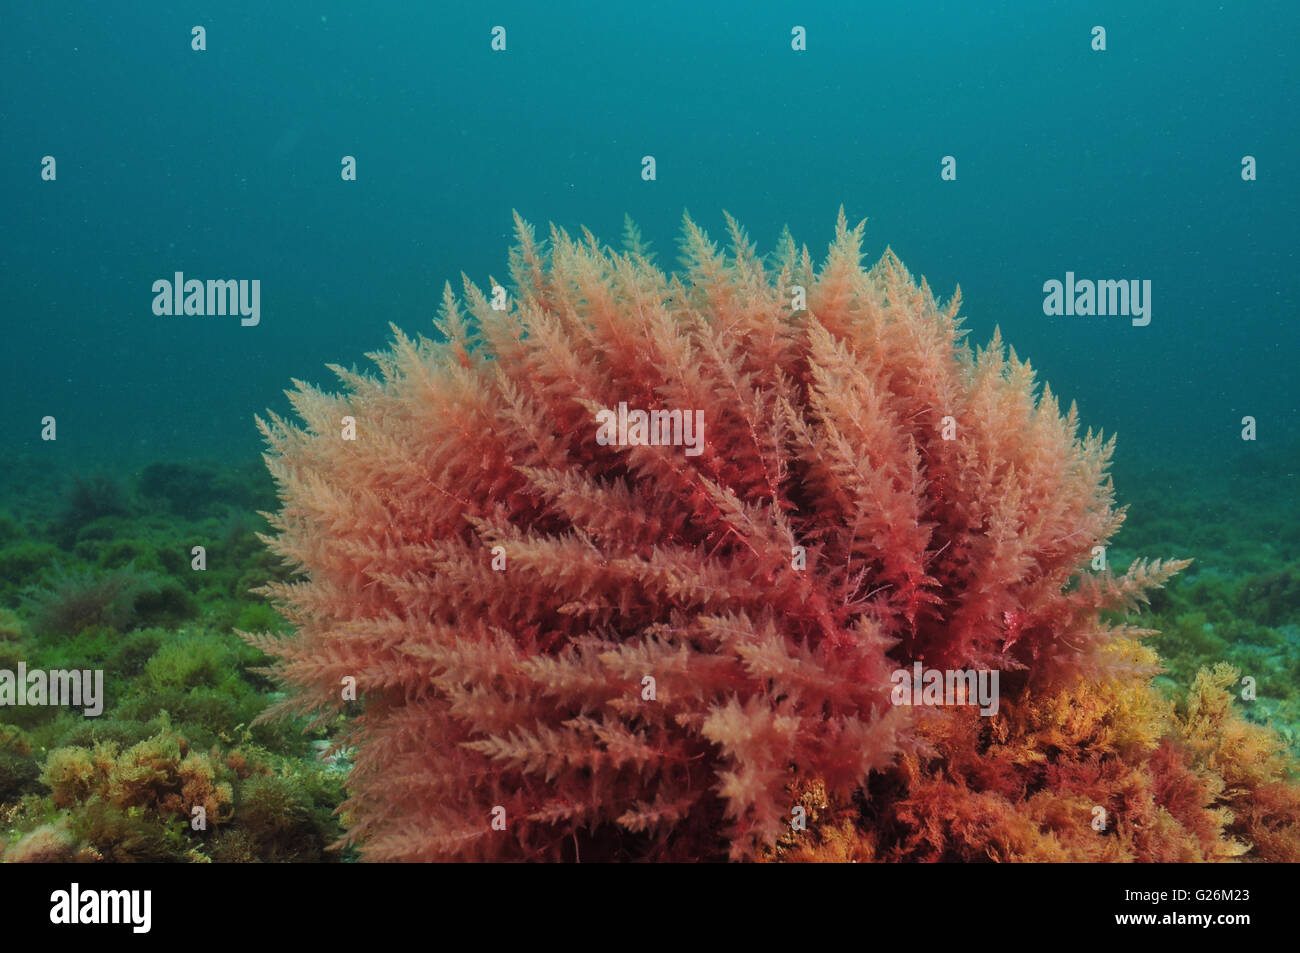 Bush de algas rojas se mueven en el agua turbia Foto de stock